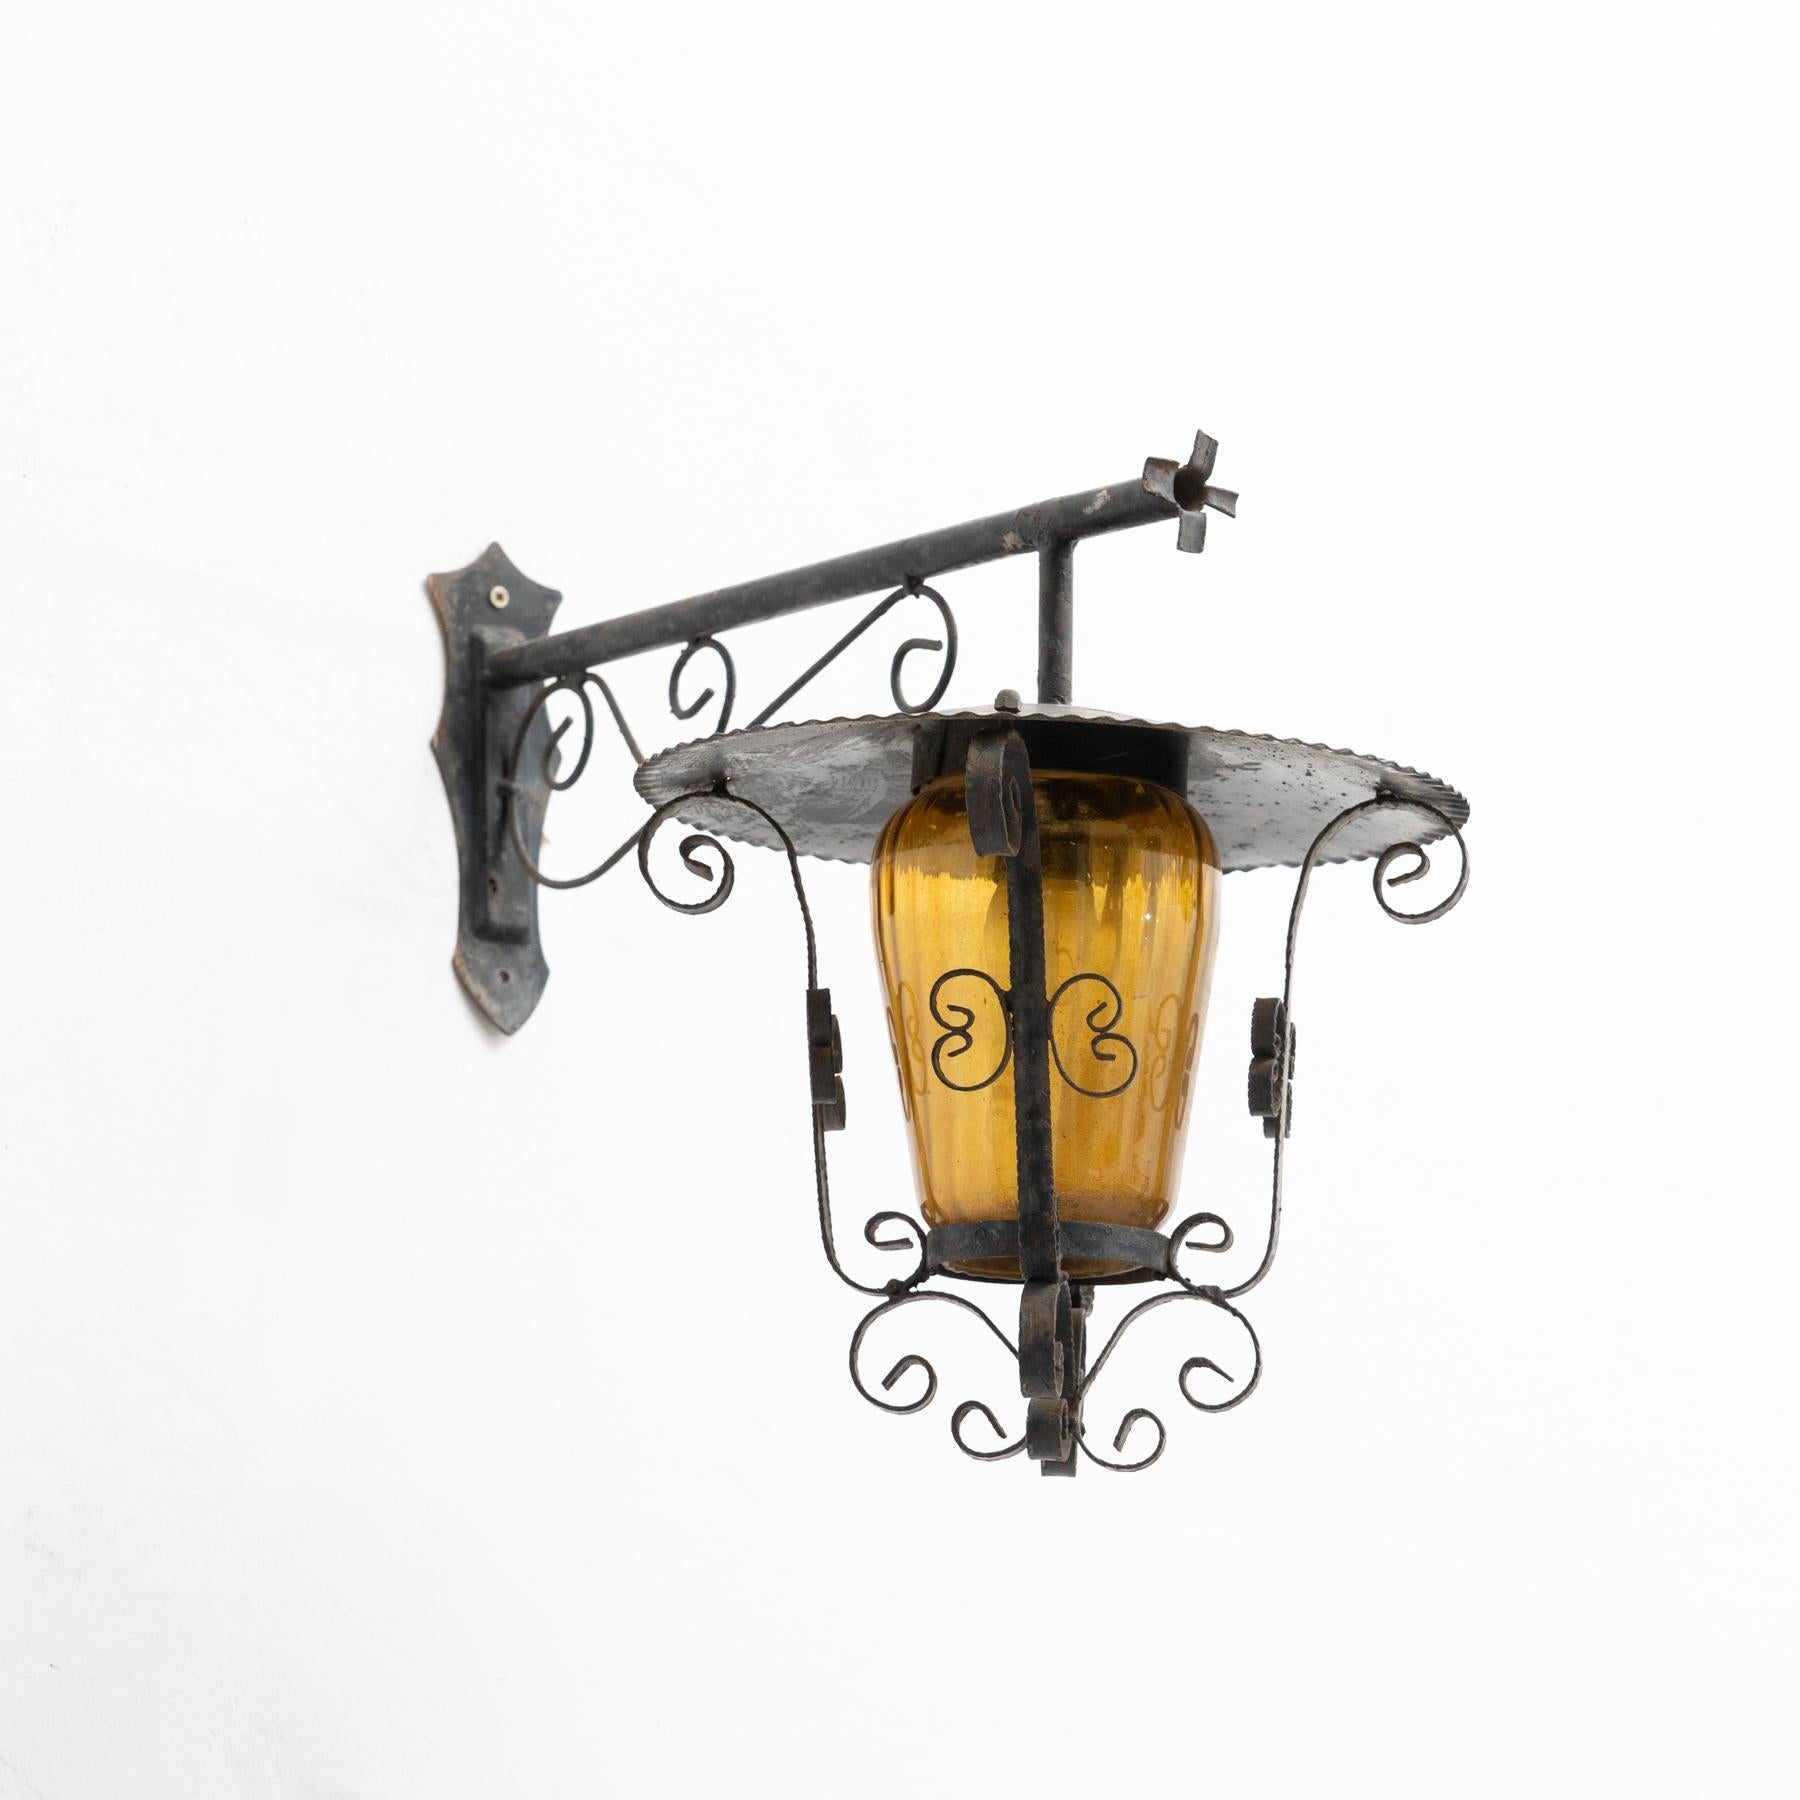 Antike Gartenwandlampe aus dem frühen 20. Jahrhundert.

Von unbekanntem Hersteller, Frankreich.

Originaler Zustand mit geringen alters- und gebrauchsbedingten Abnutzungserscheinungen, der eine schöne Patina aufweist.

Nicht